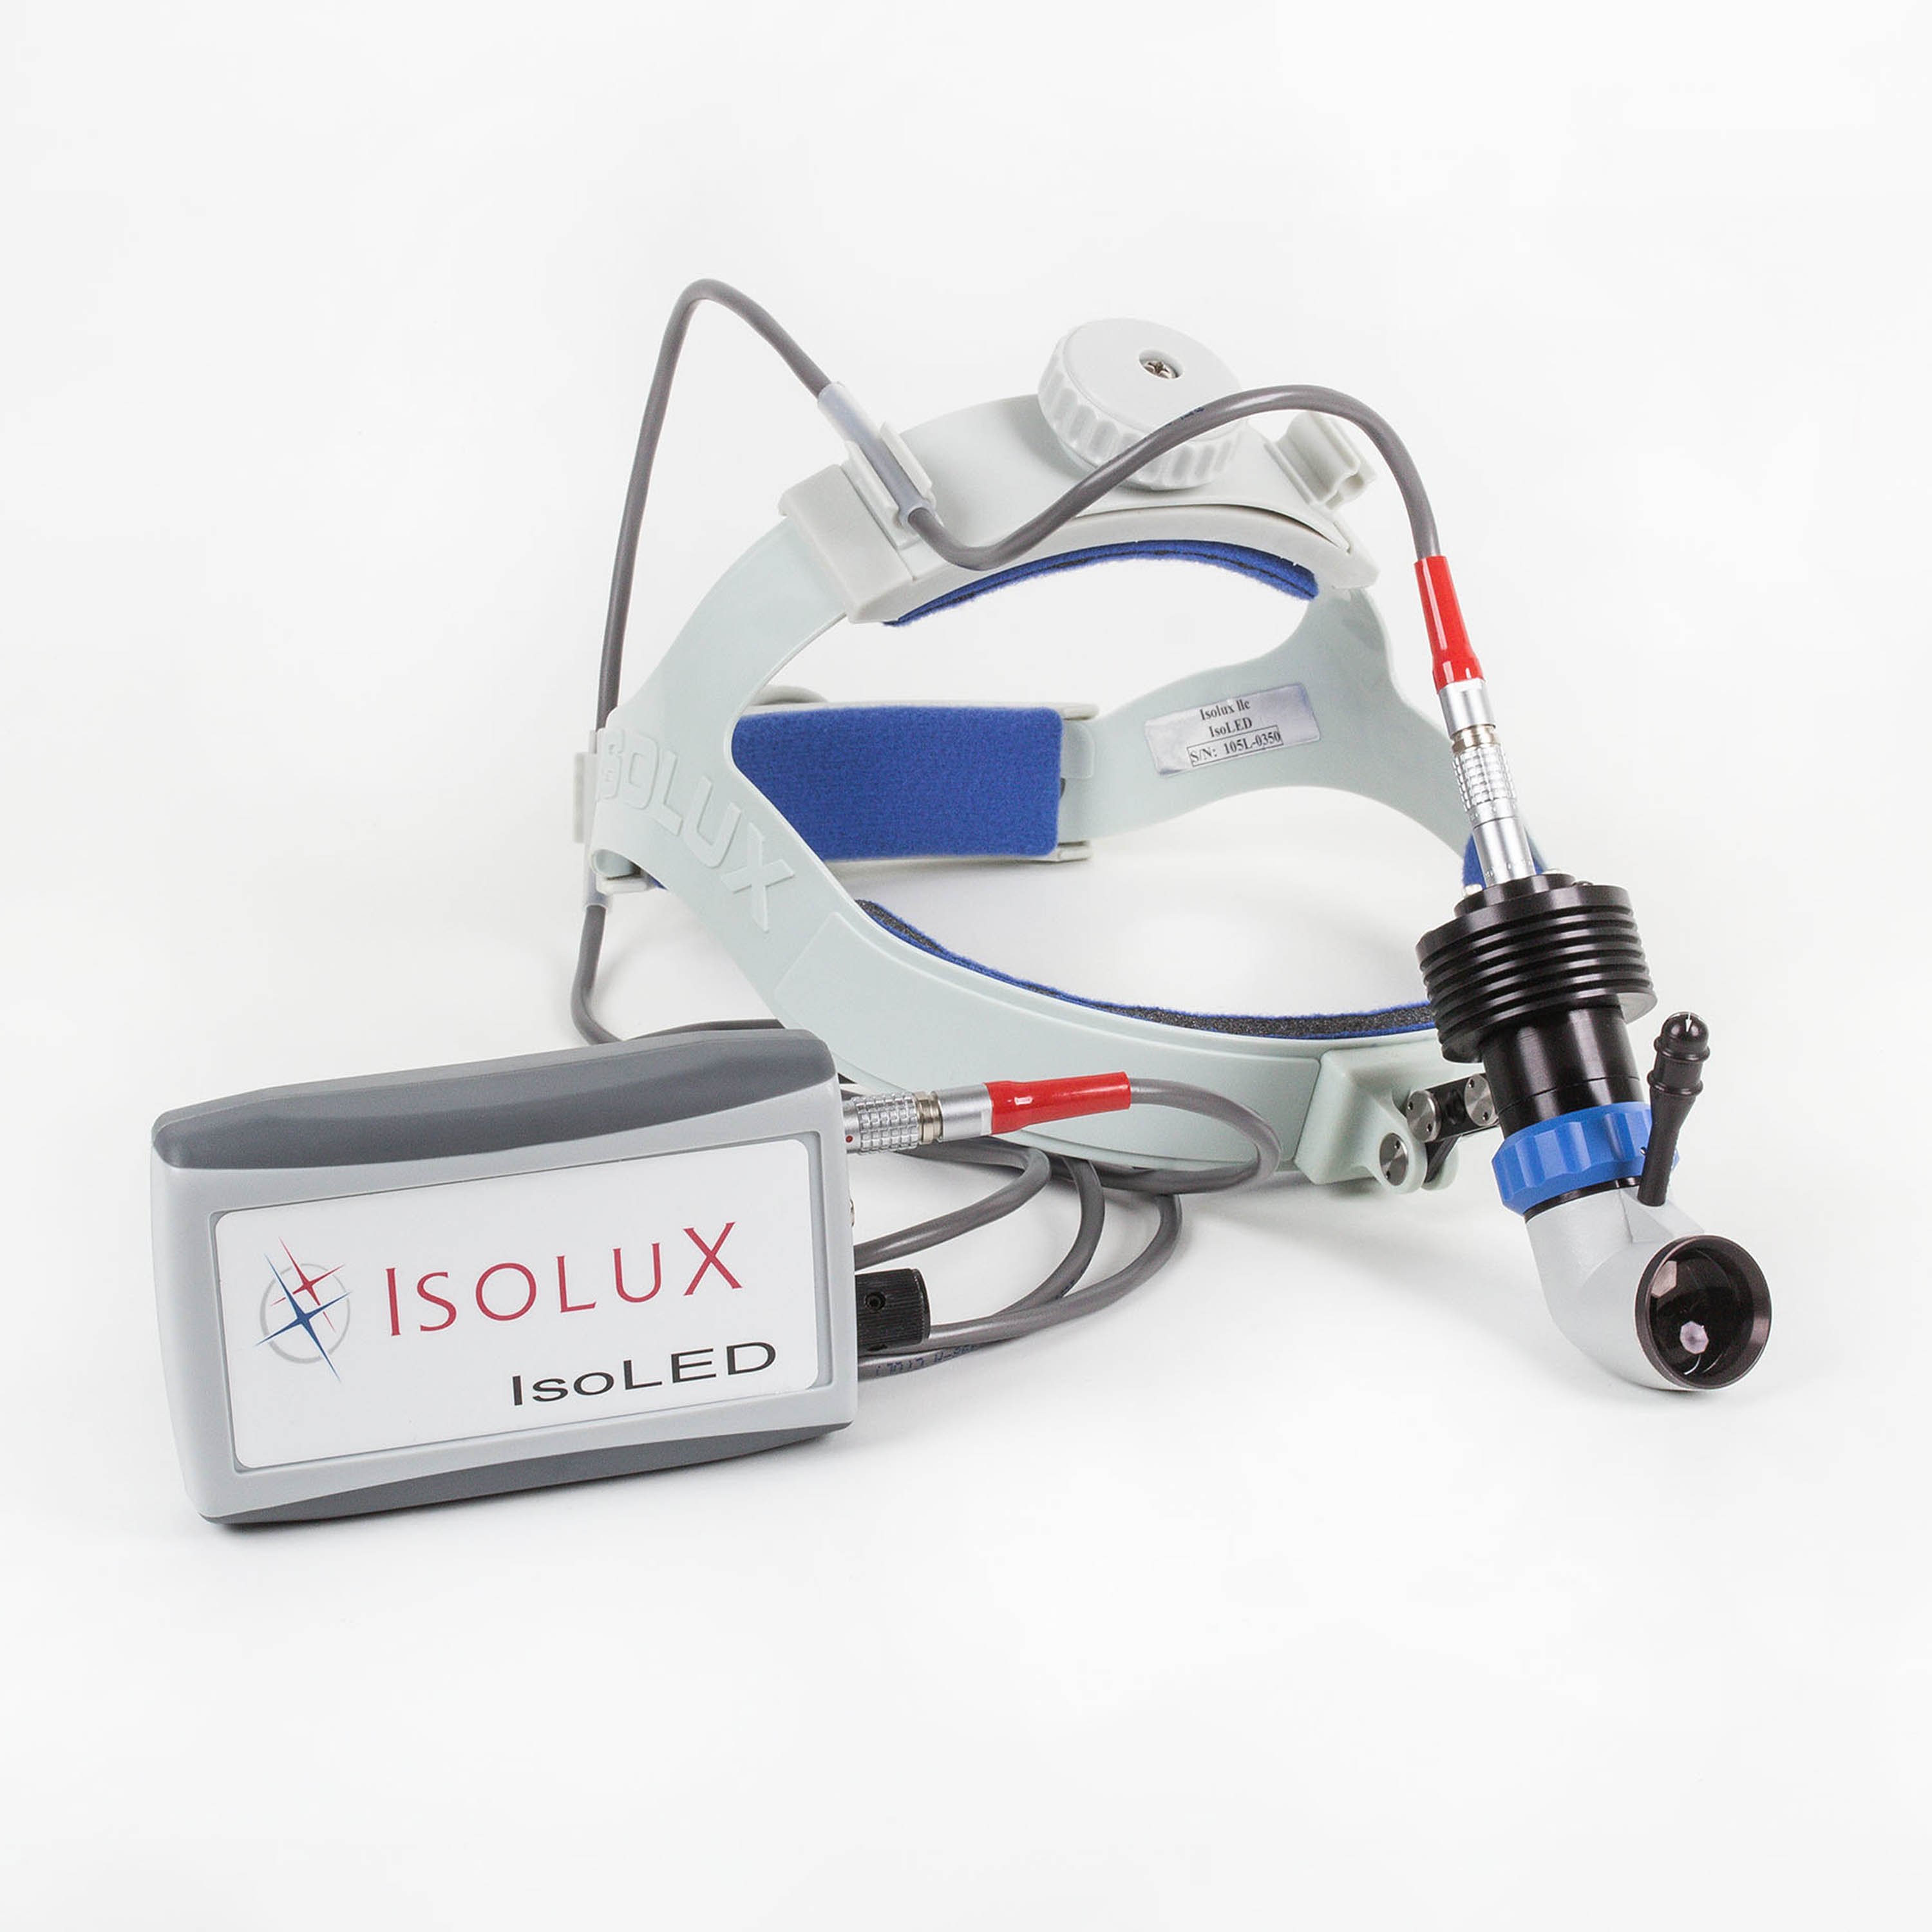 IsoLux IsoLED II LED Surgical Headlight